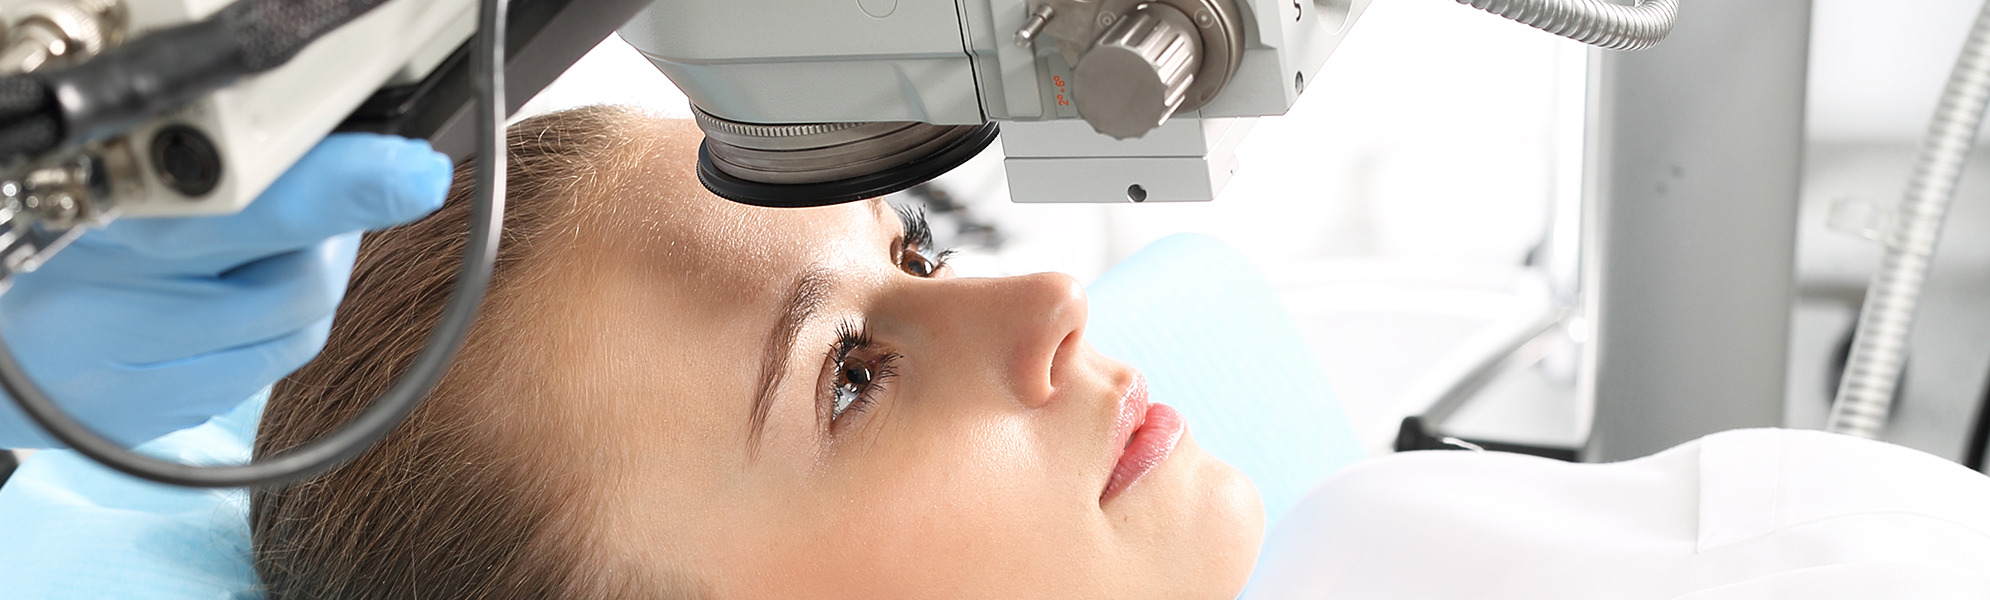 Augenheilkunde, Ophthalmologie, Augenmedizin und Optiker 